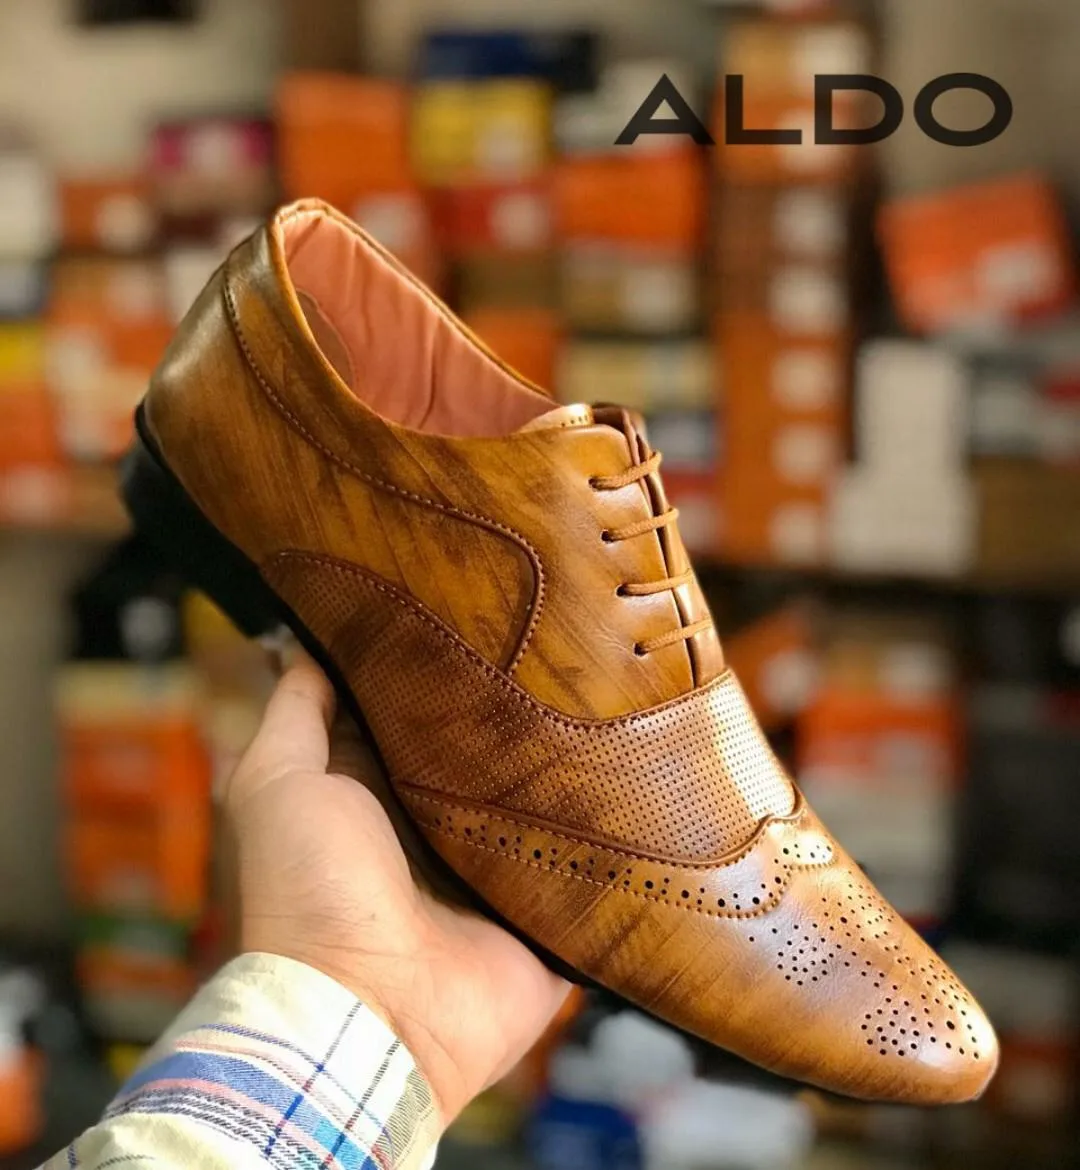 Aldo Shoes | escapeauthority.com